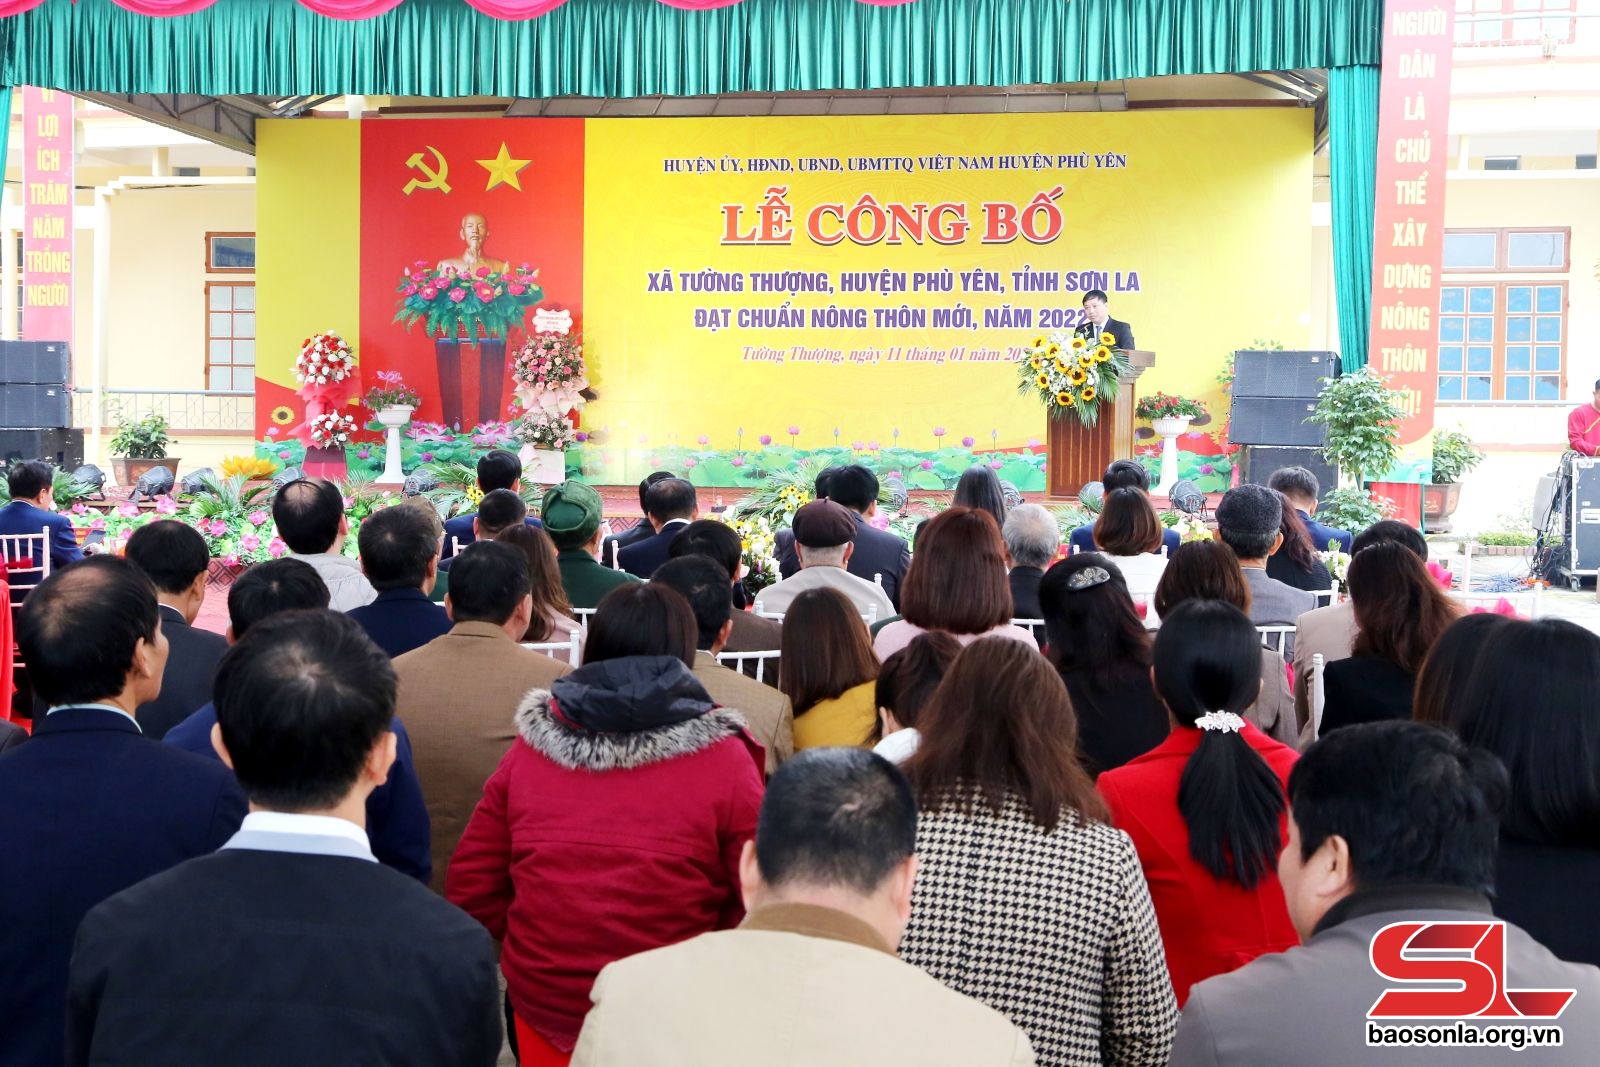 Ngày 11/1, huyện Phù Yên đã tổ chức Lễ công bố xã Tường Thượng đạt chuẩn nông thôn mới năm 2022.